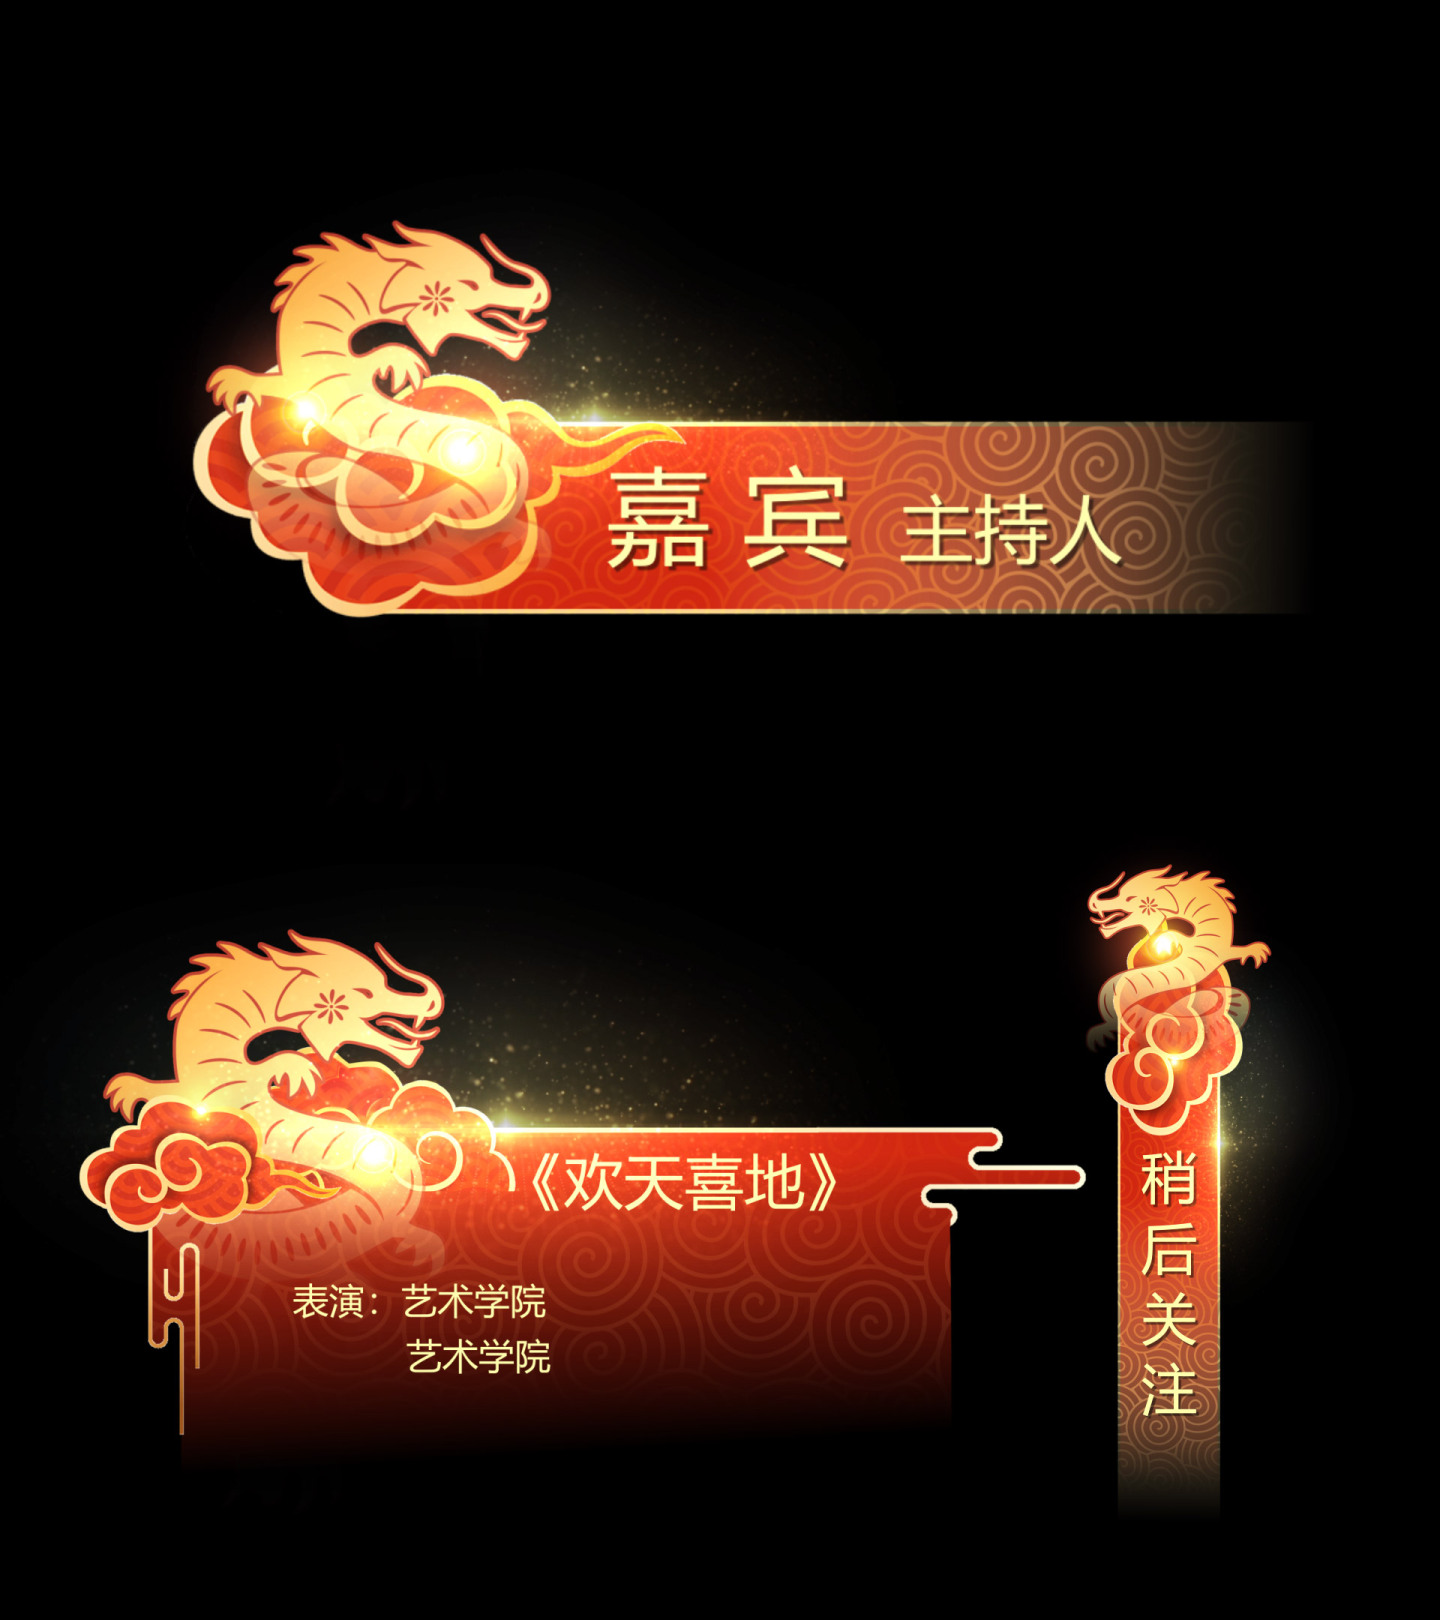 新年喜庆节日晚会活动字幕包装AE模板